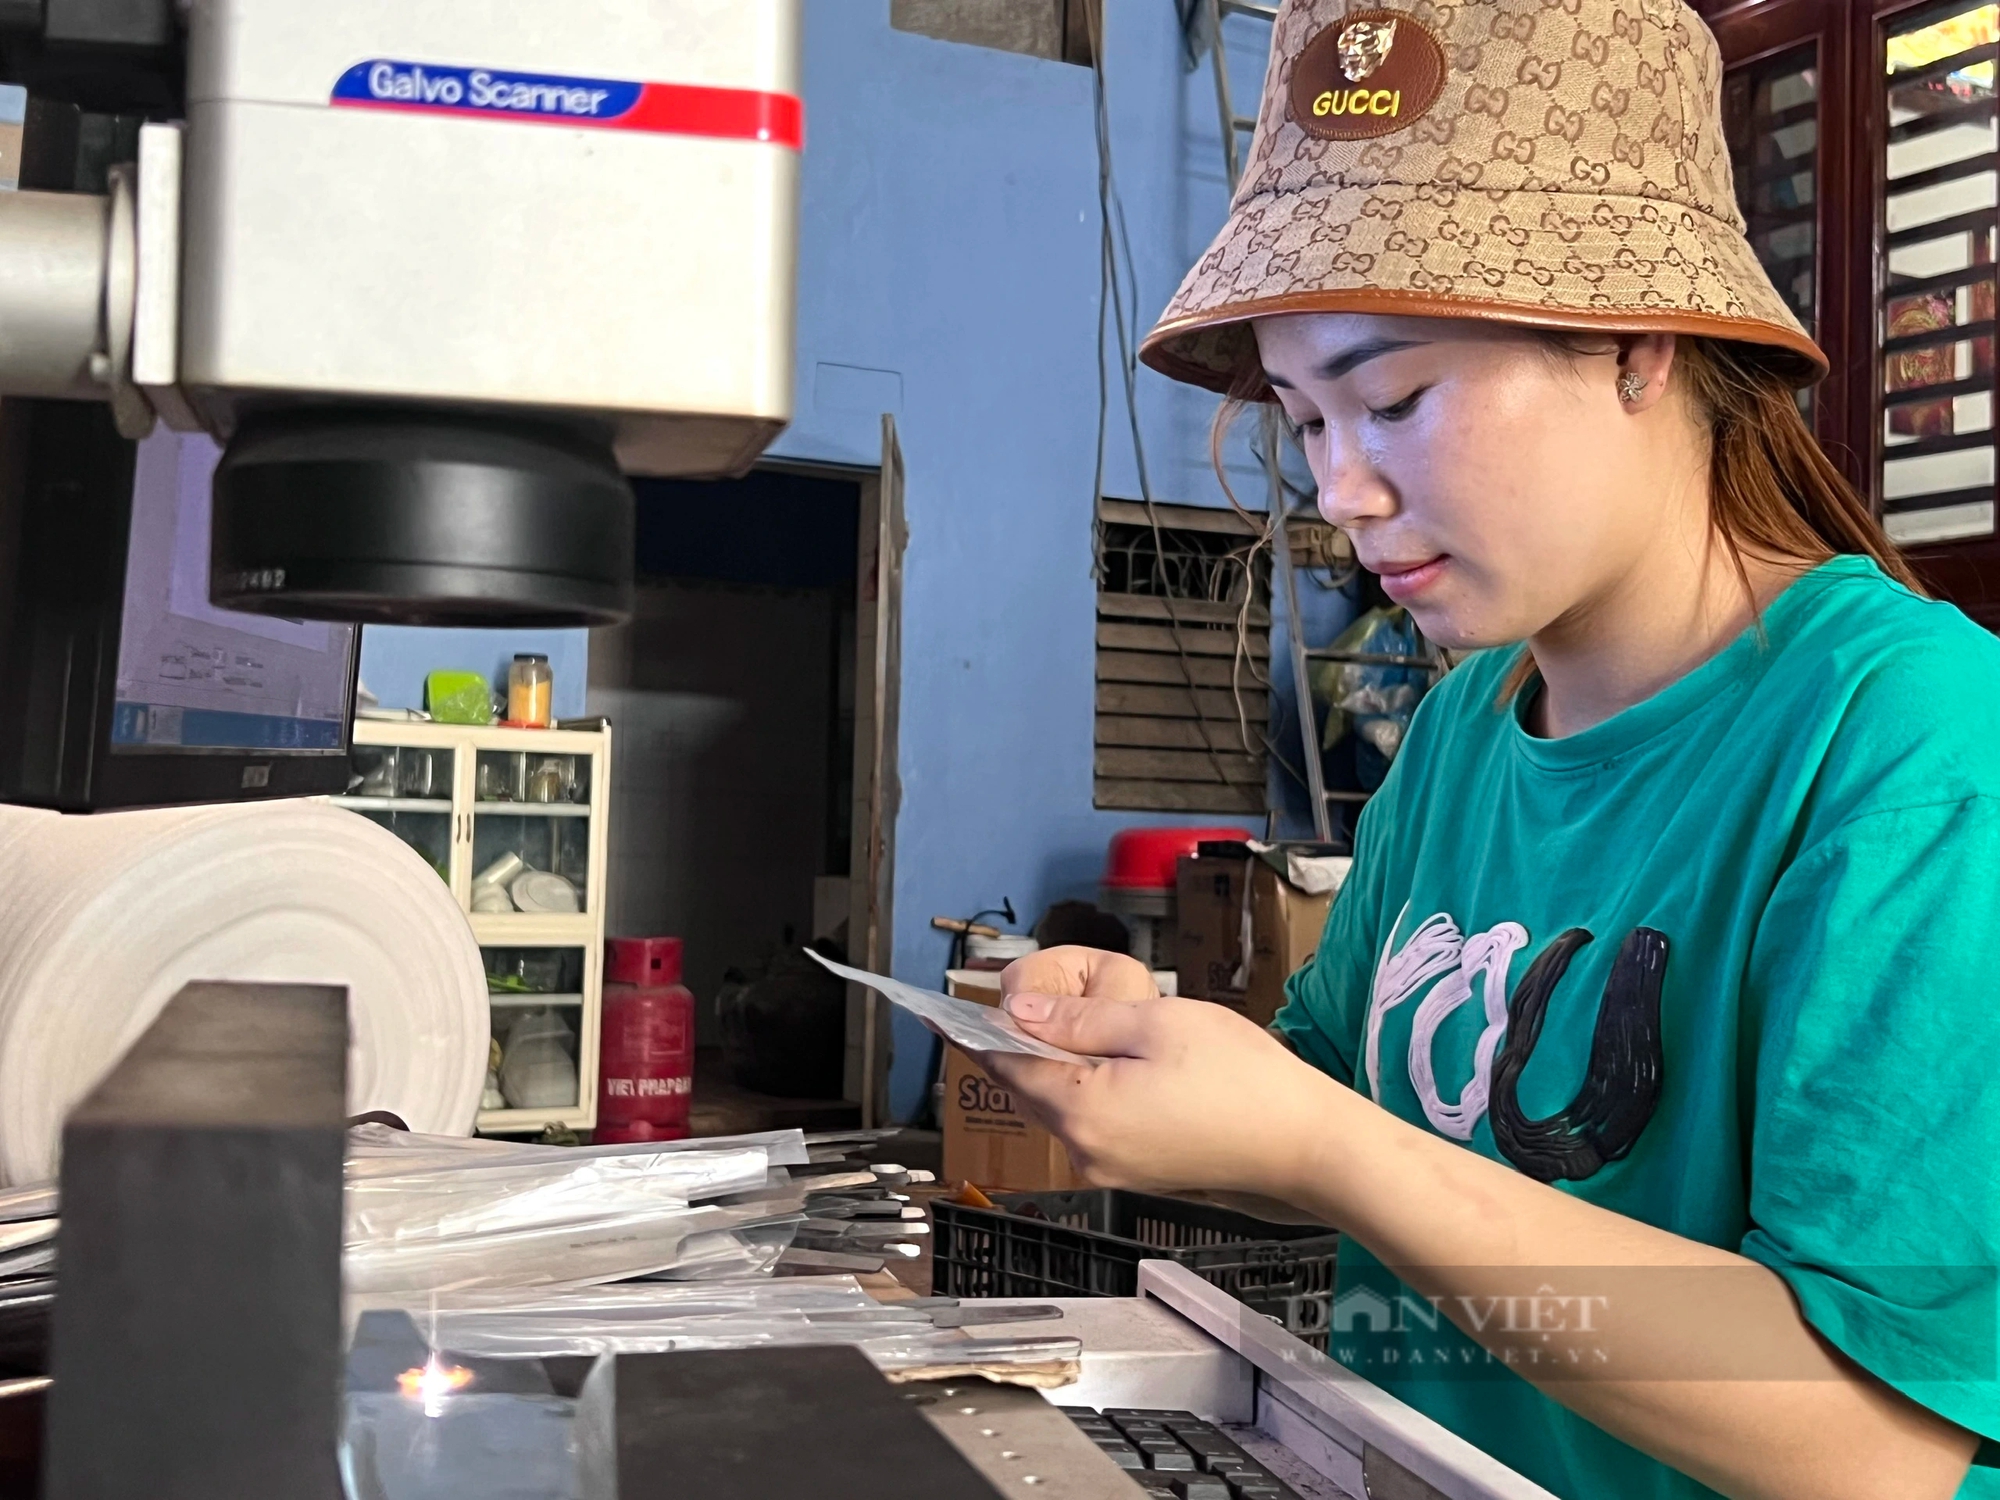 Một thanh niên làng nghề rèn ở Thanh Hóa đưa công nghệ mới vào sản xuất, tiếng lành lan xa- Ảnh 5.